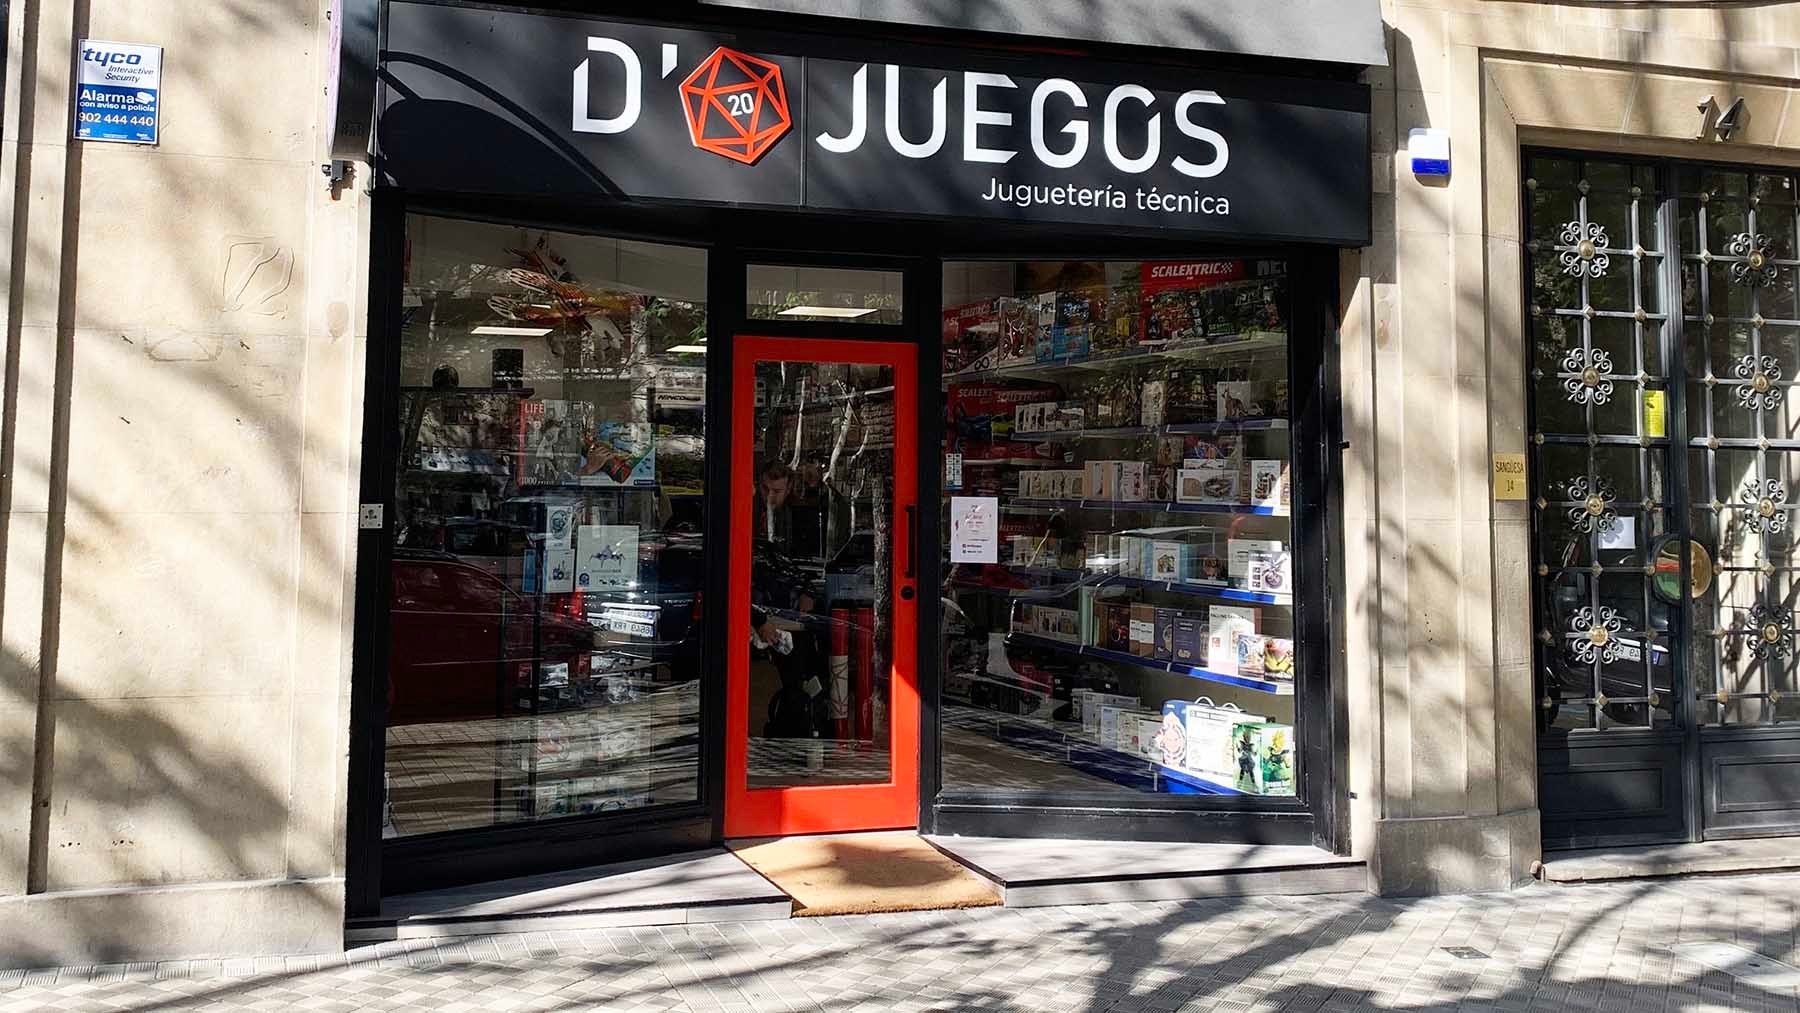 La nueva tienda D20Juegos está en la calle Sangüesa 14 de Pamplona. Navarra.com